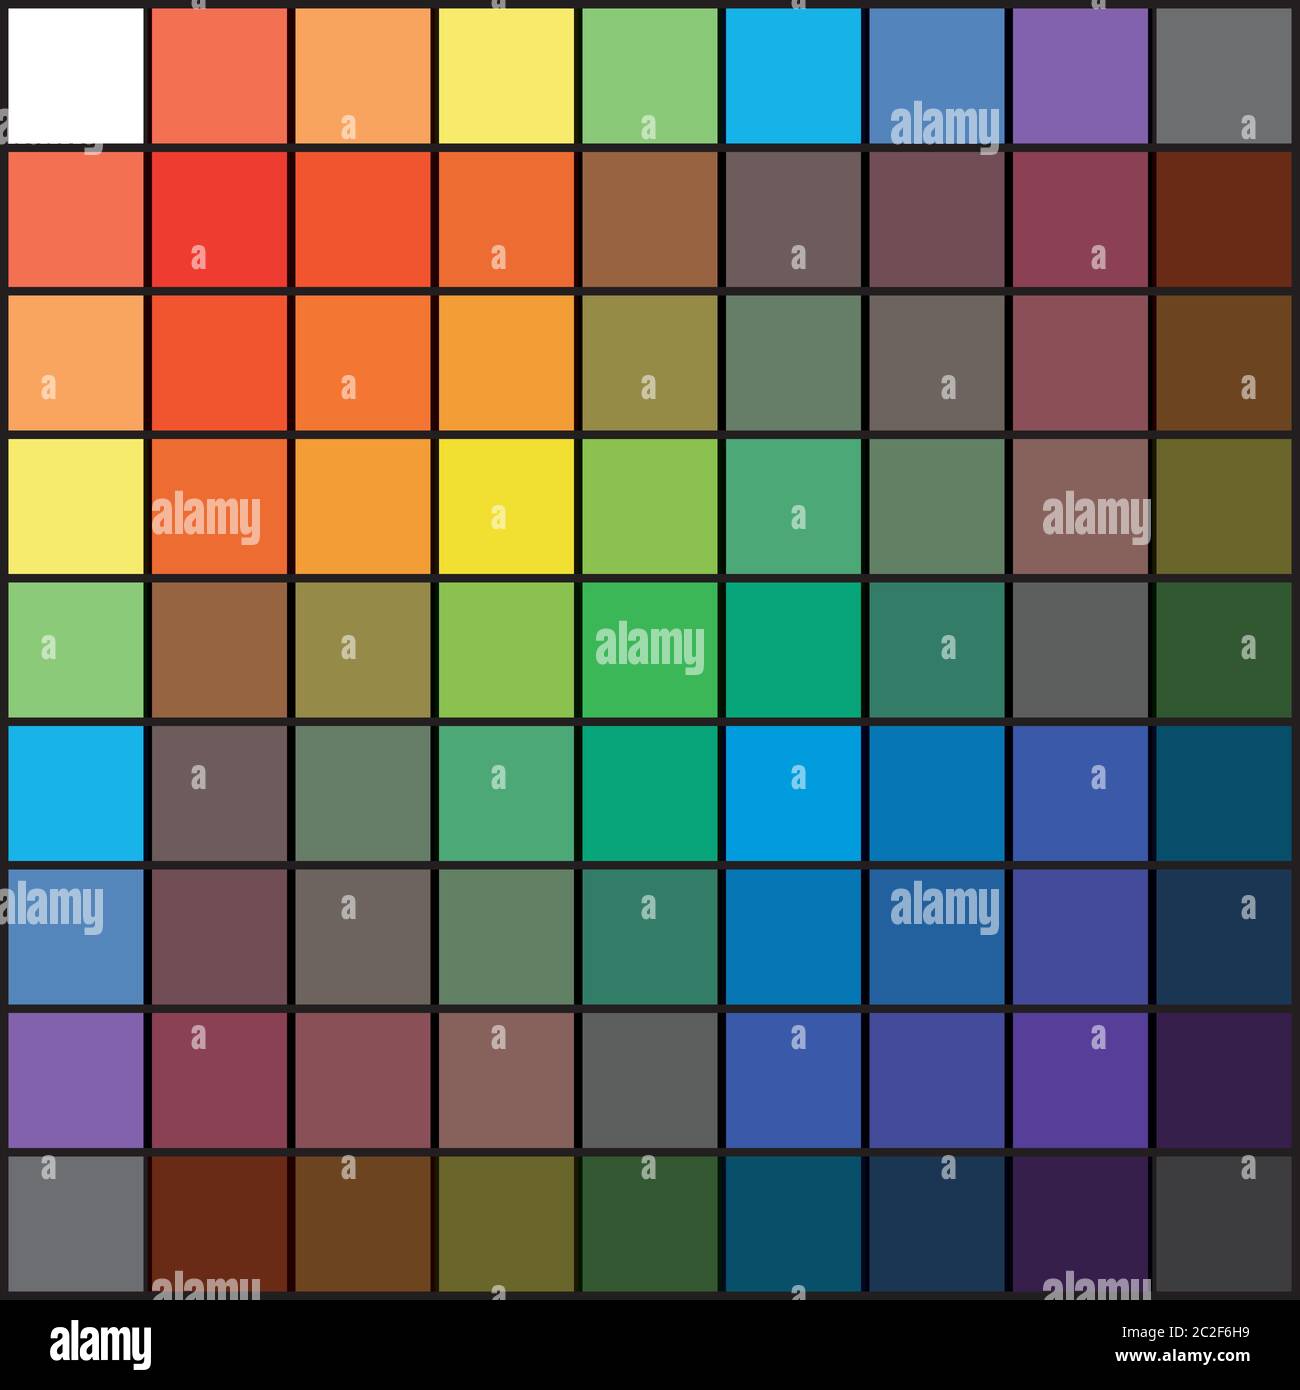 Griglia Rainbow spettrale policromo multicolore di 9 x 9 segmenti. La tavolozza armonica spettrale colorata del pittore. Foto Stock